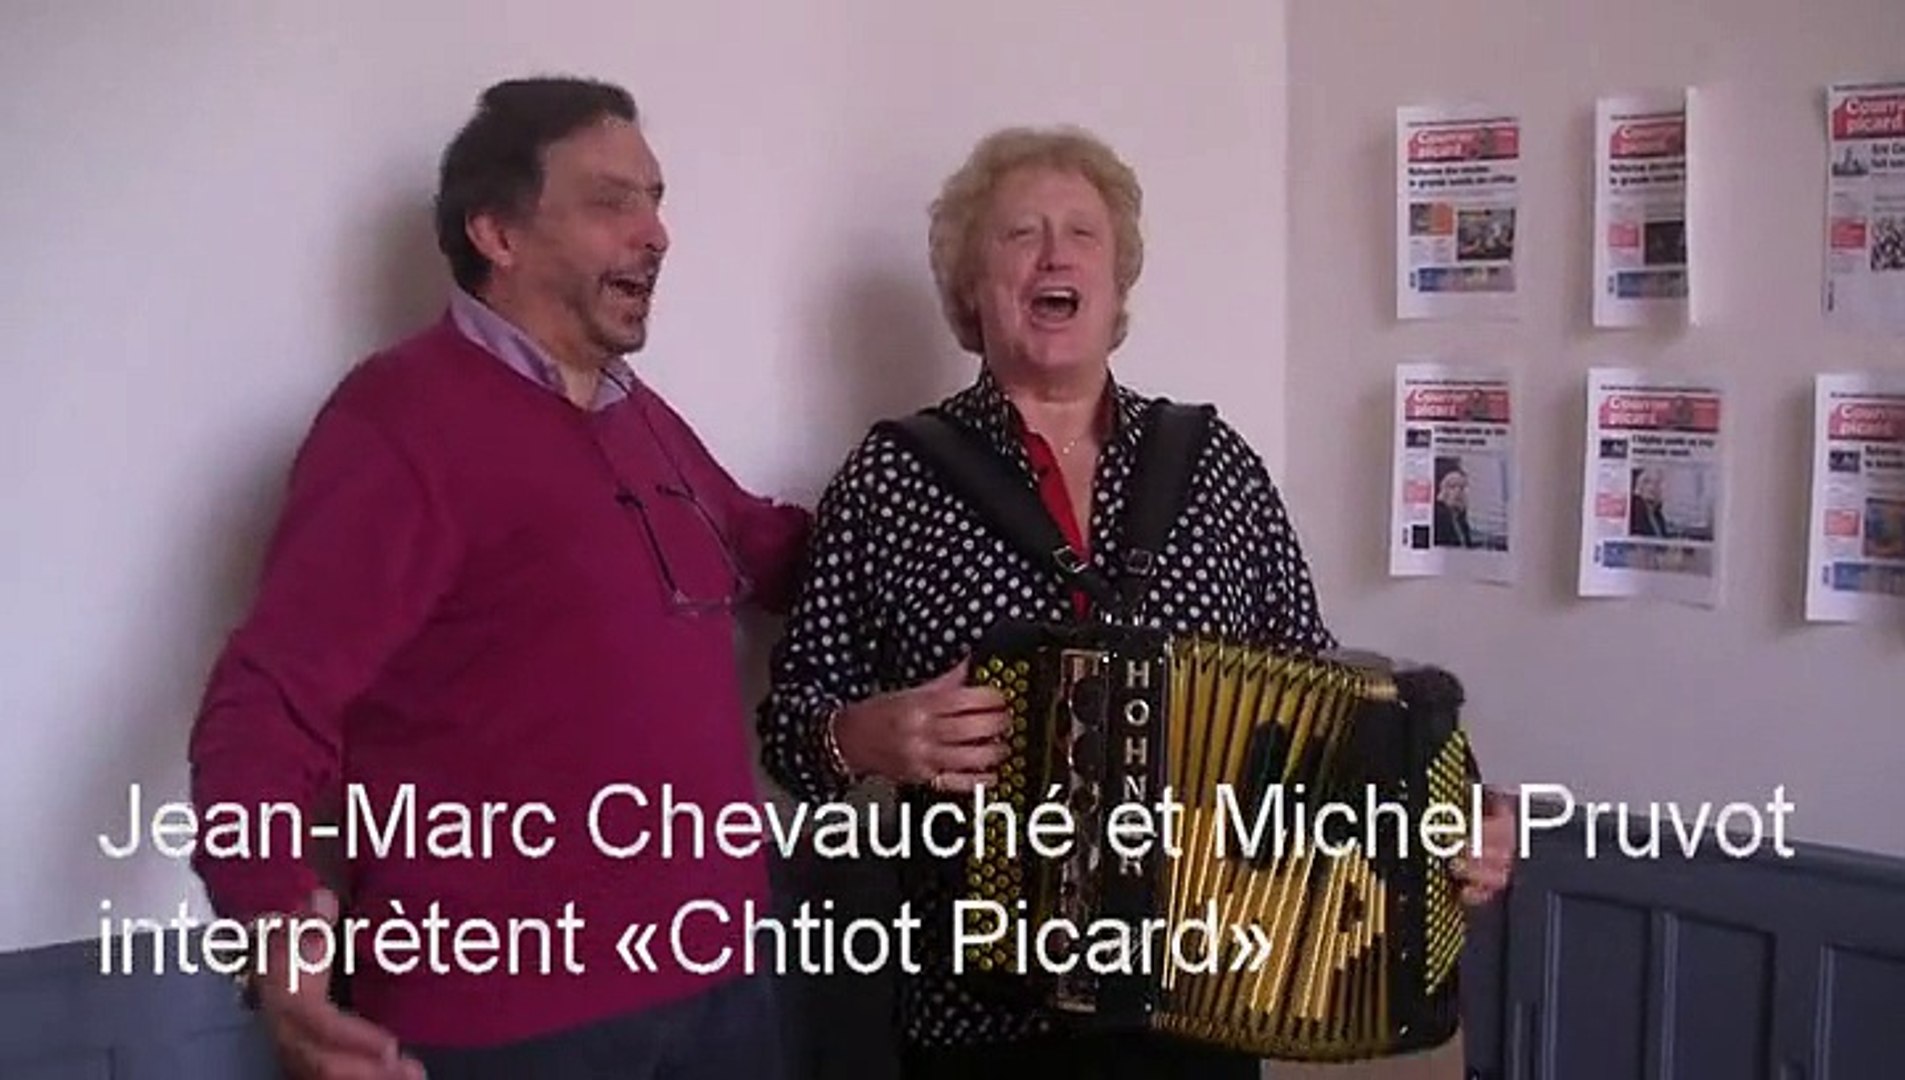 Chtiot Picard" de Michel Pruvot et Jean-Marc Chevauché - Vidéo Dailymotion